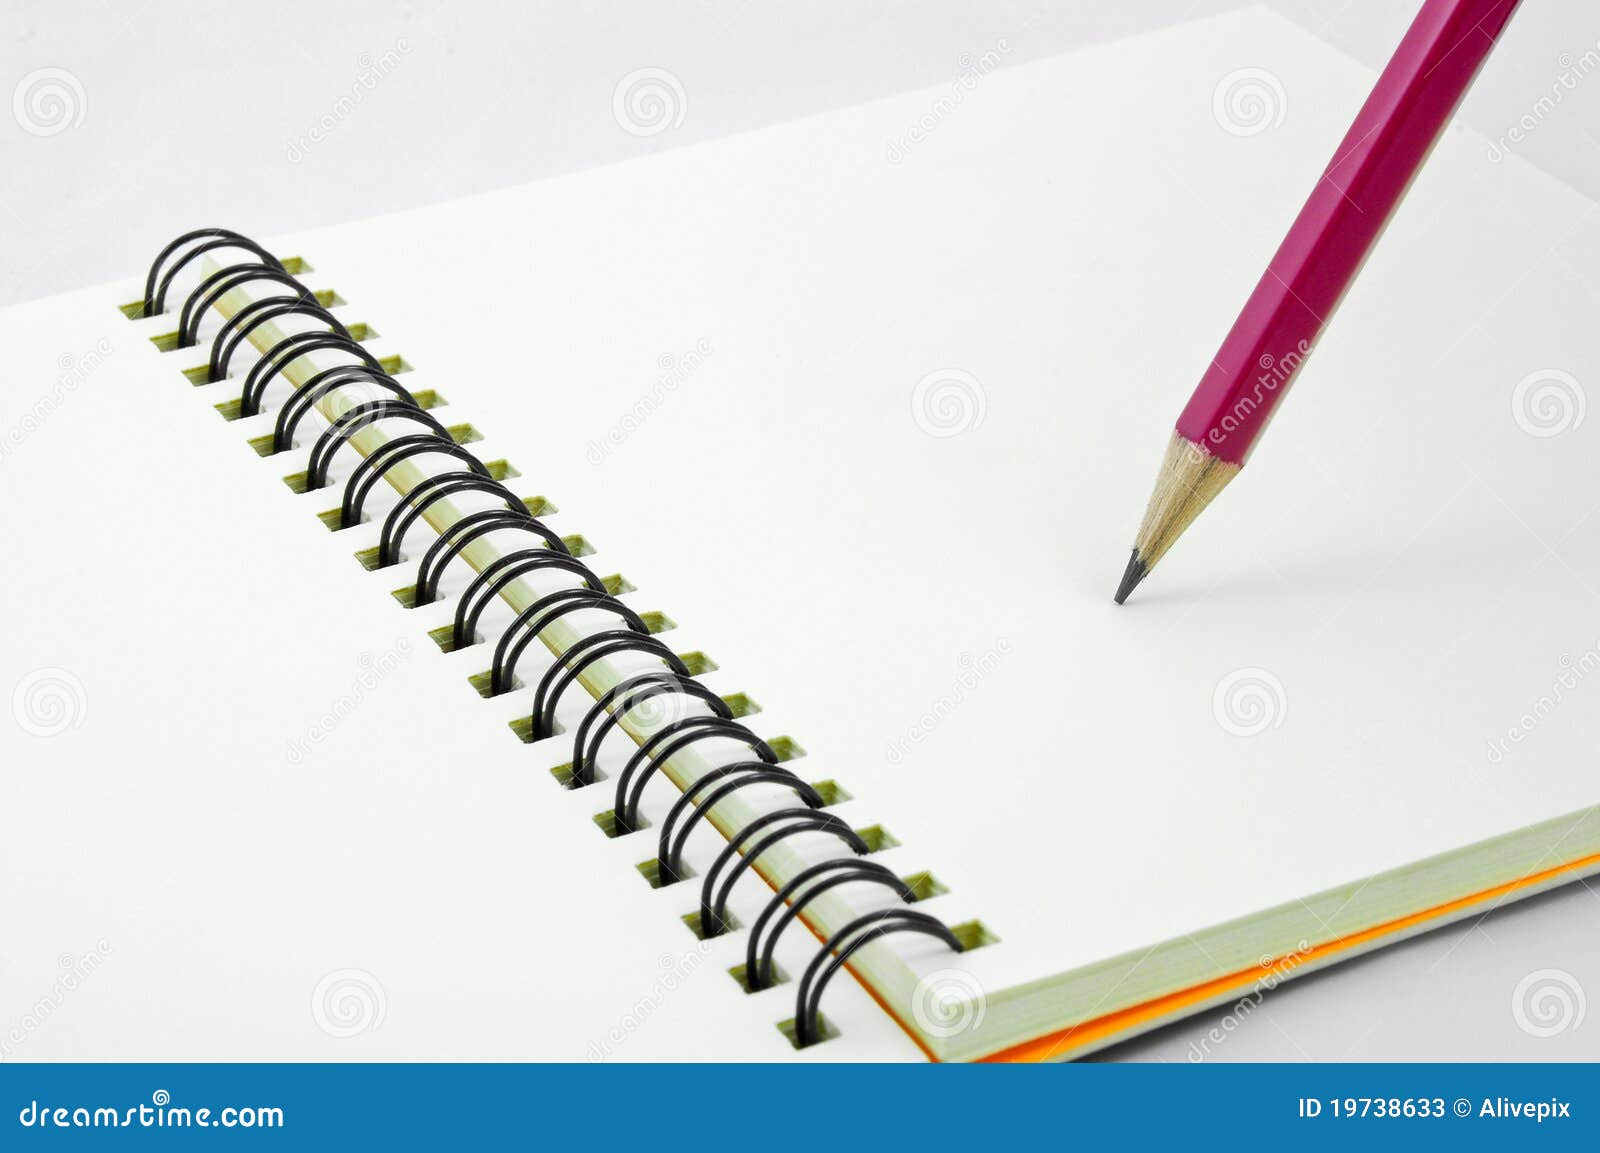 Blank red för blyertspenna för sida för bokanmärkning öppnad